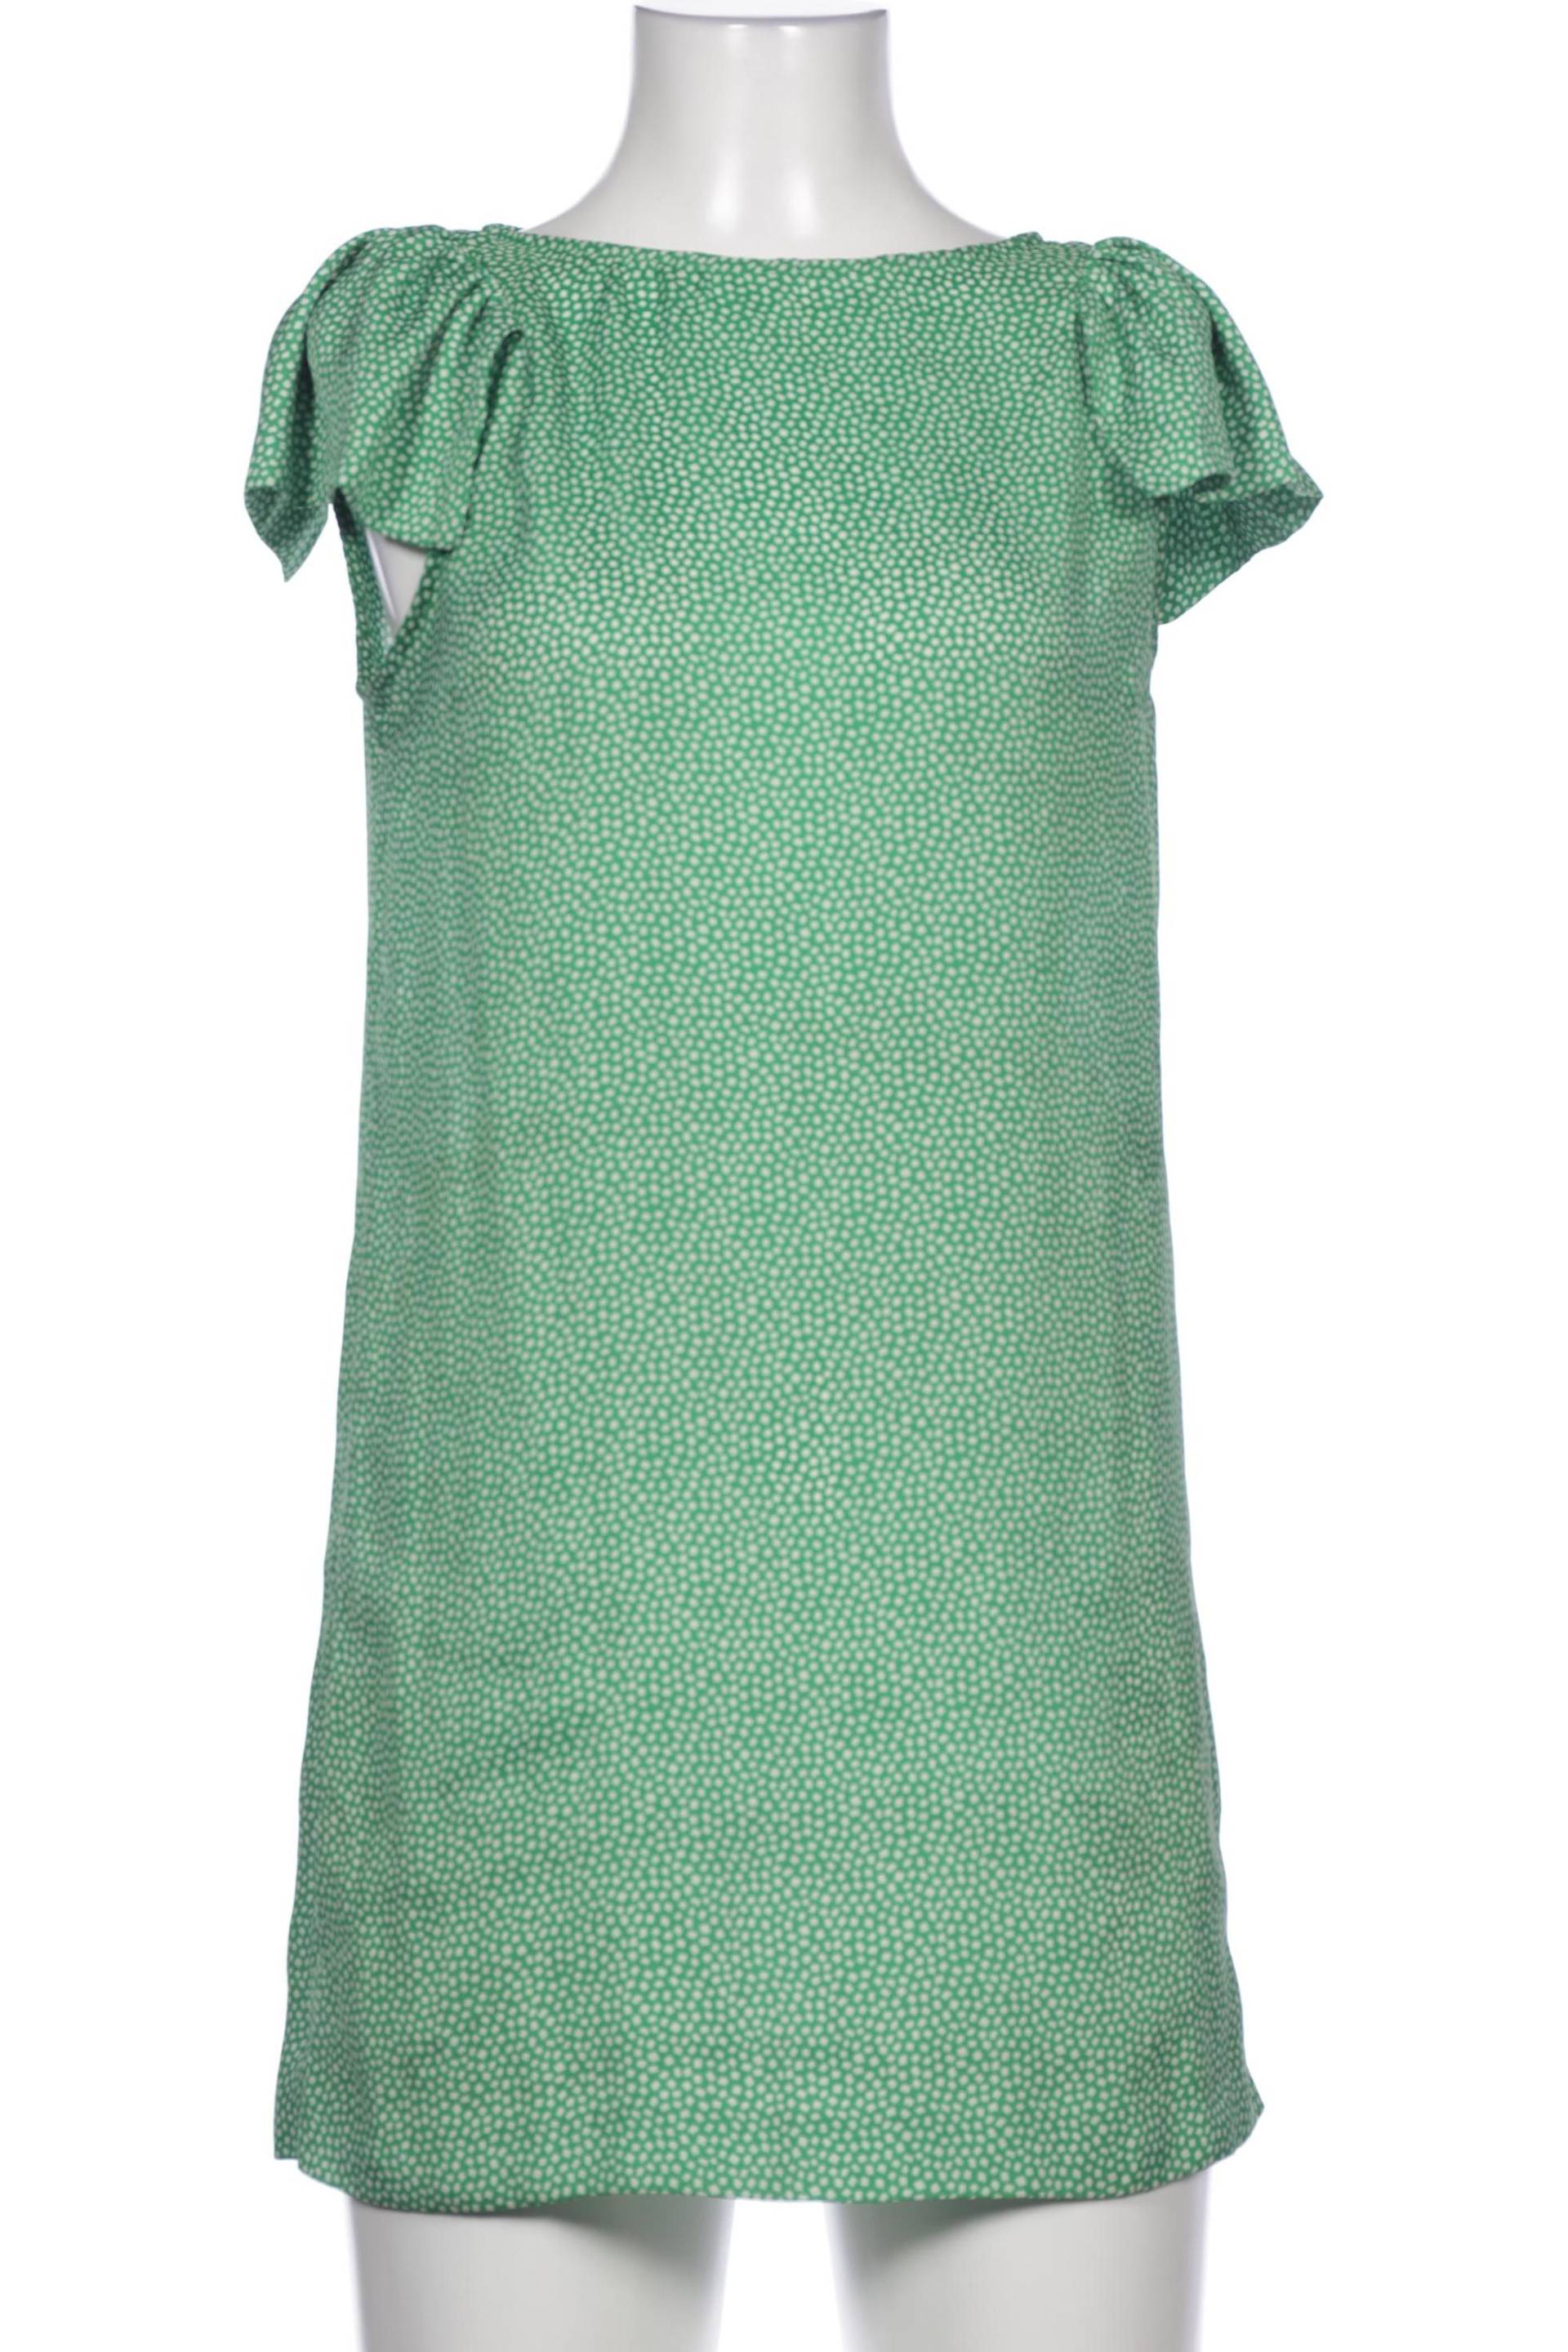 ZARA Damen Kleid, grün von ZARA